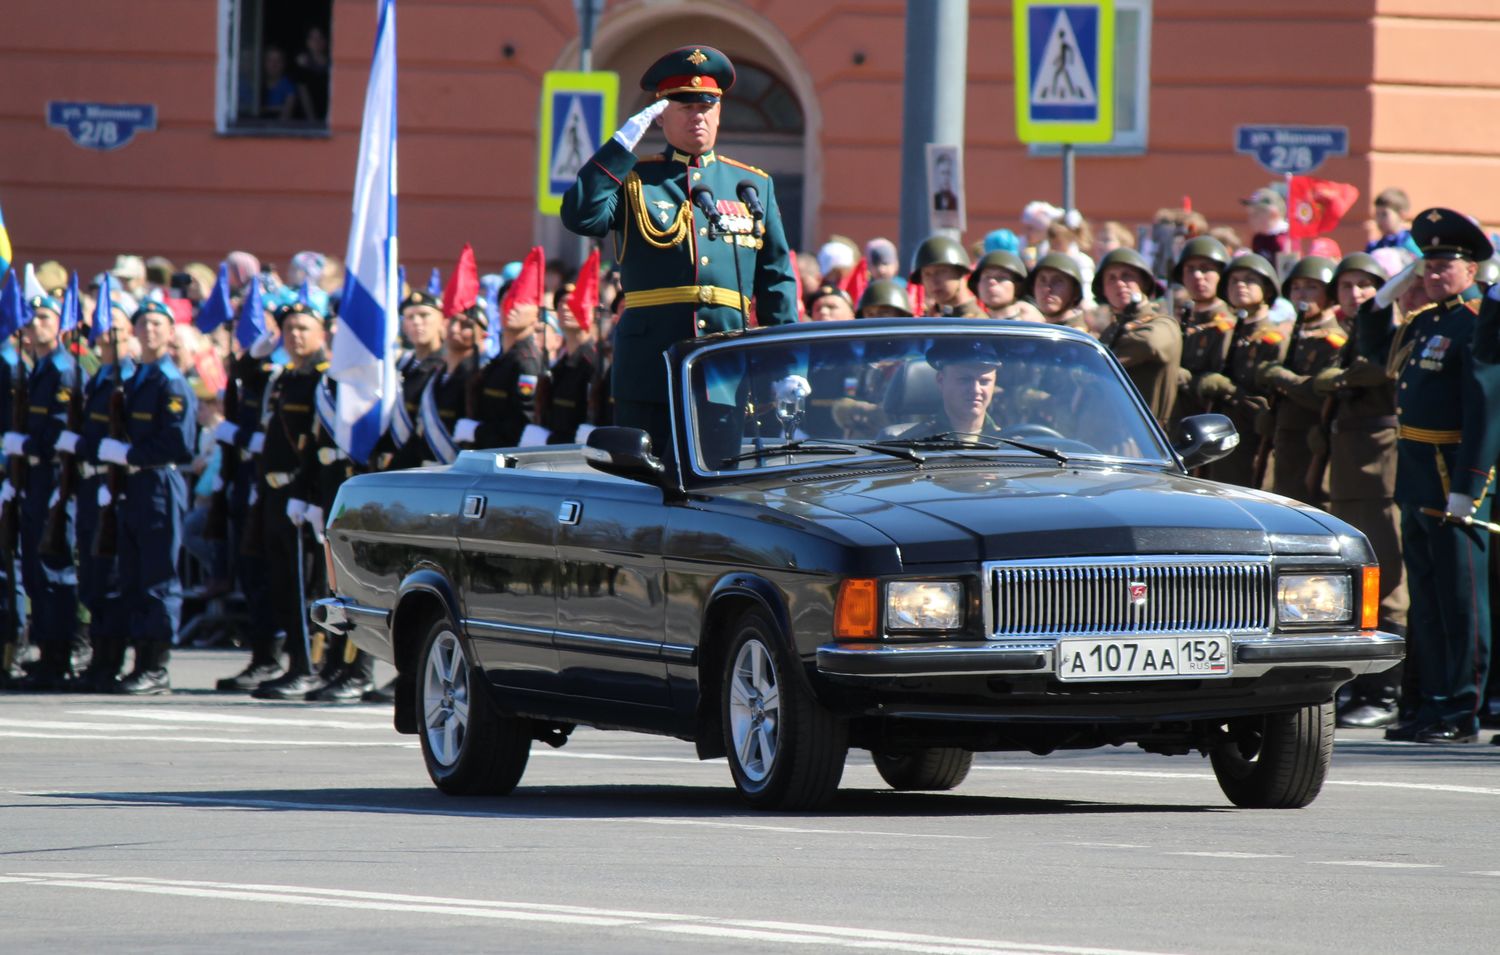 Парад в честь 73-й годовщины Победы прошел в Нижнем Новгороде (ФОТО) - фото 2